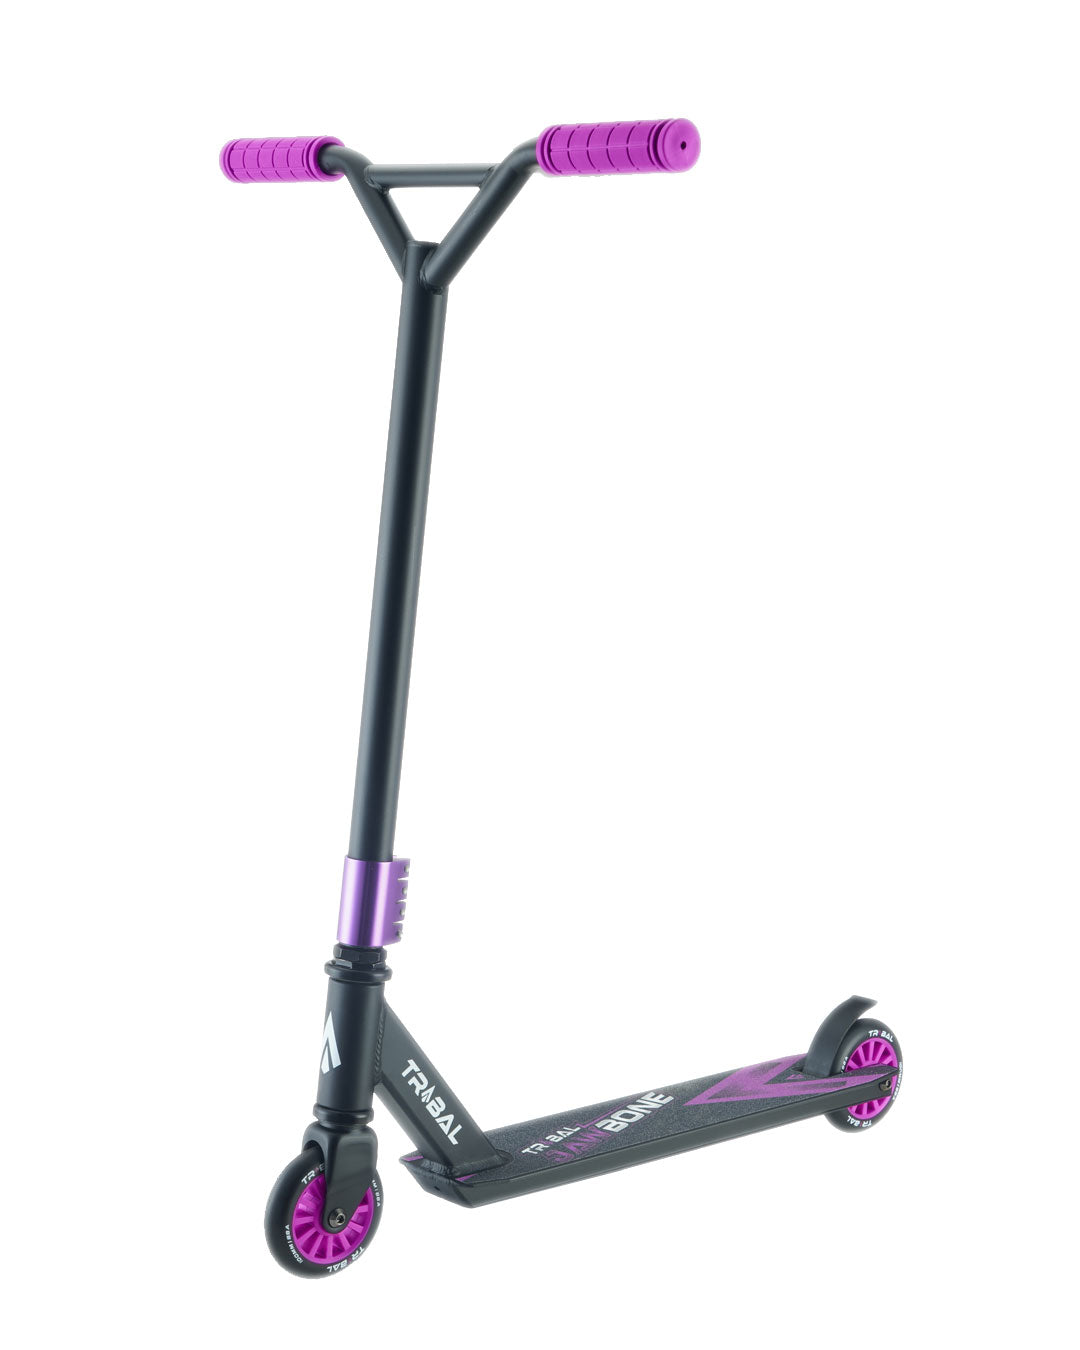 Scooter--jawbone-purple-main.jpg